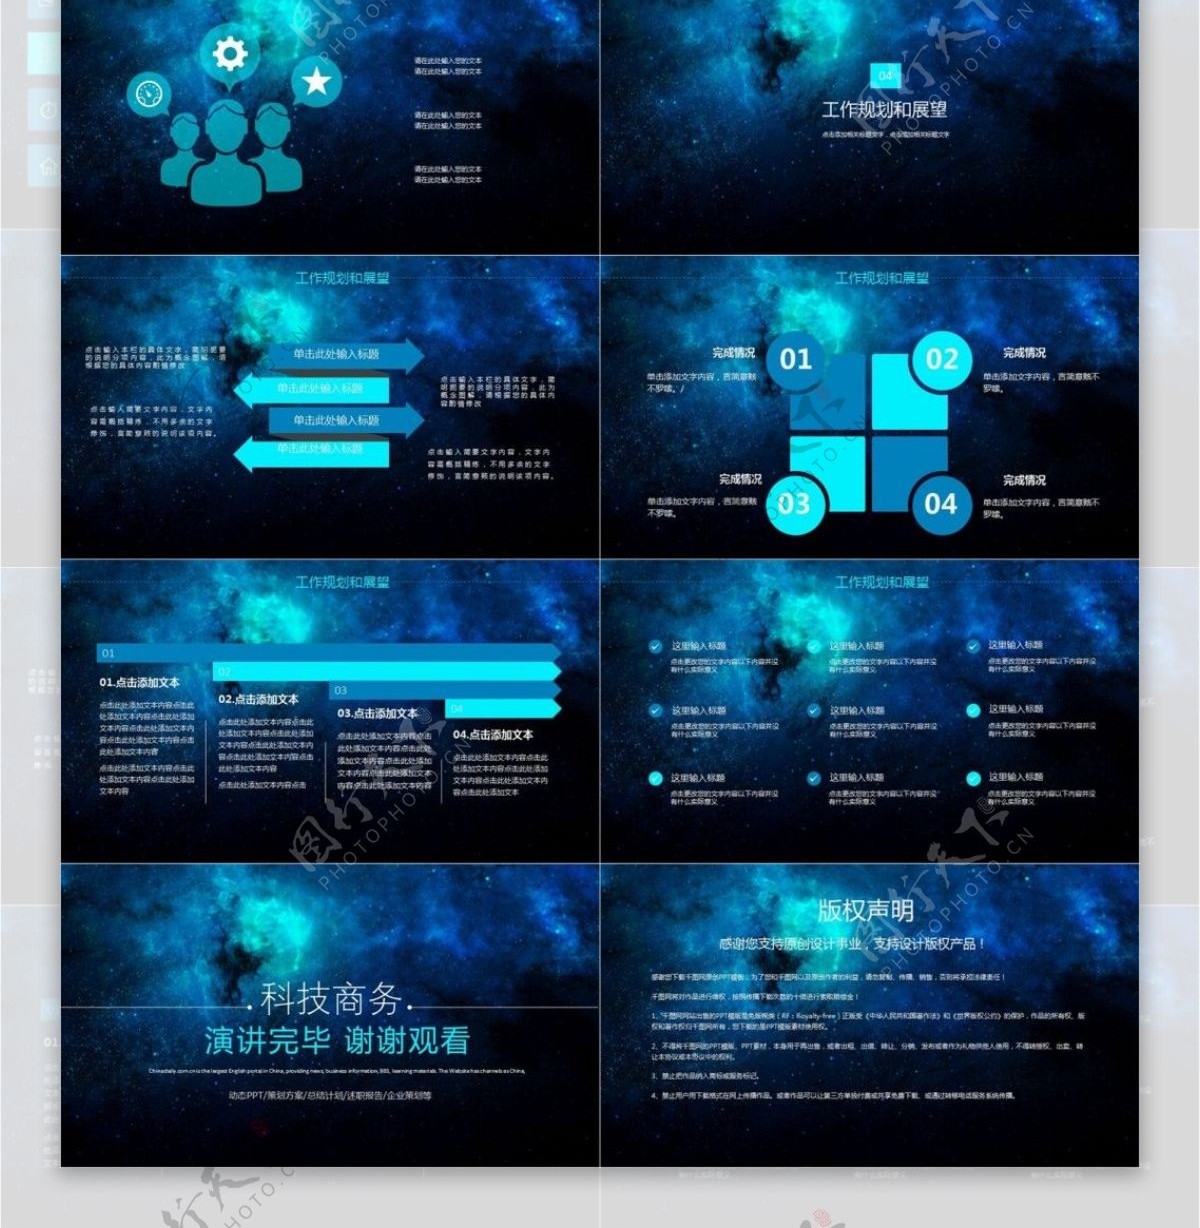 蓝色科技企业宣传介绍商业计划书PPT模板